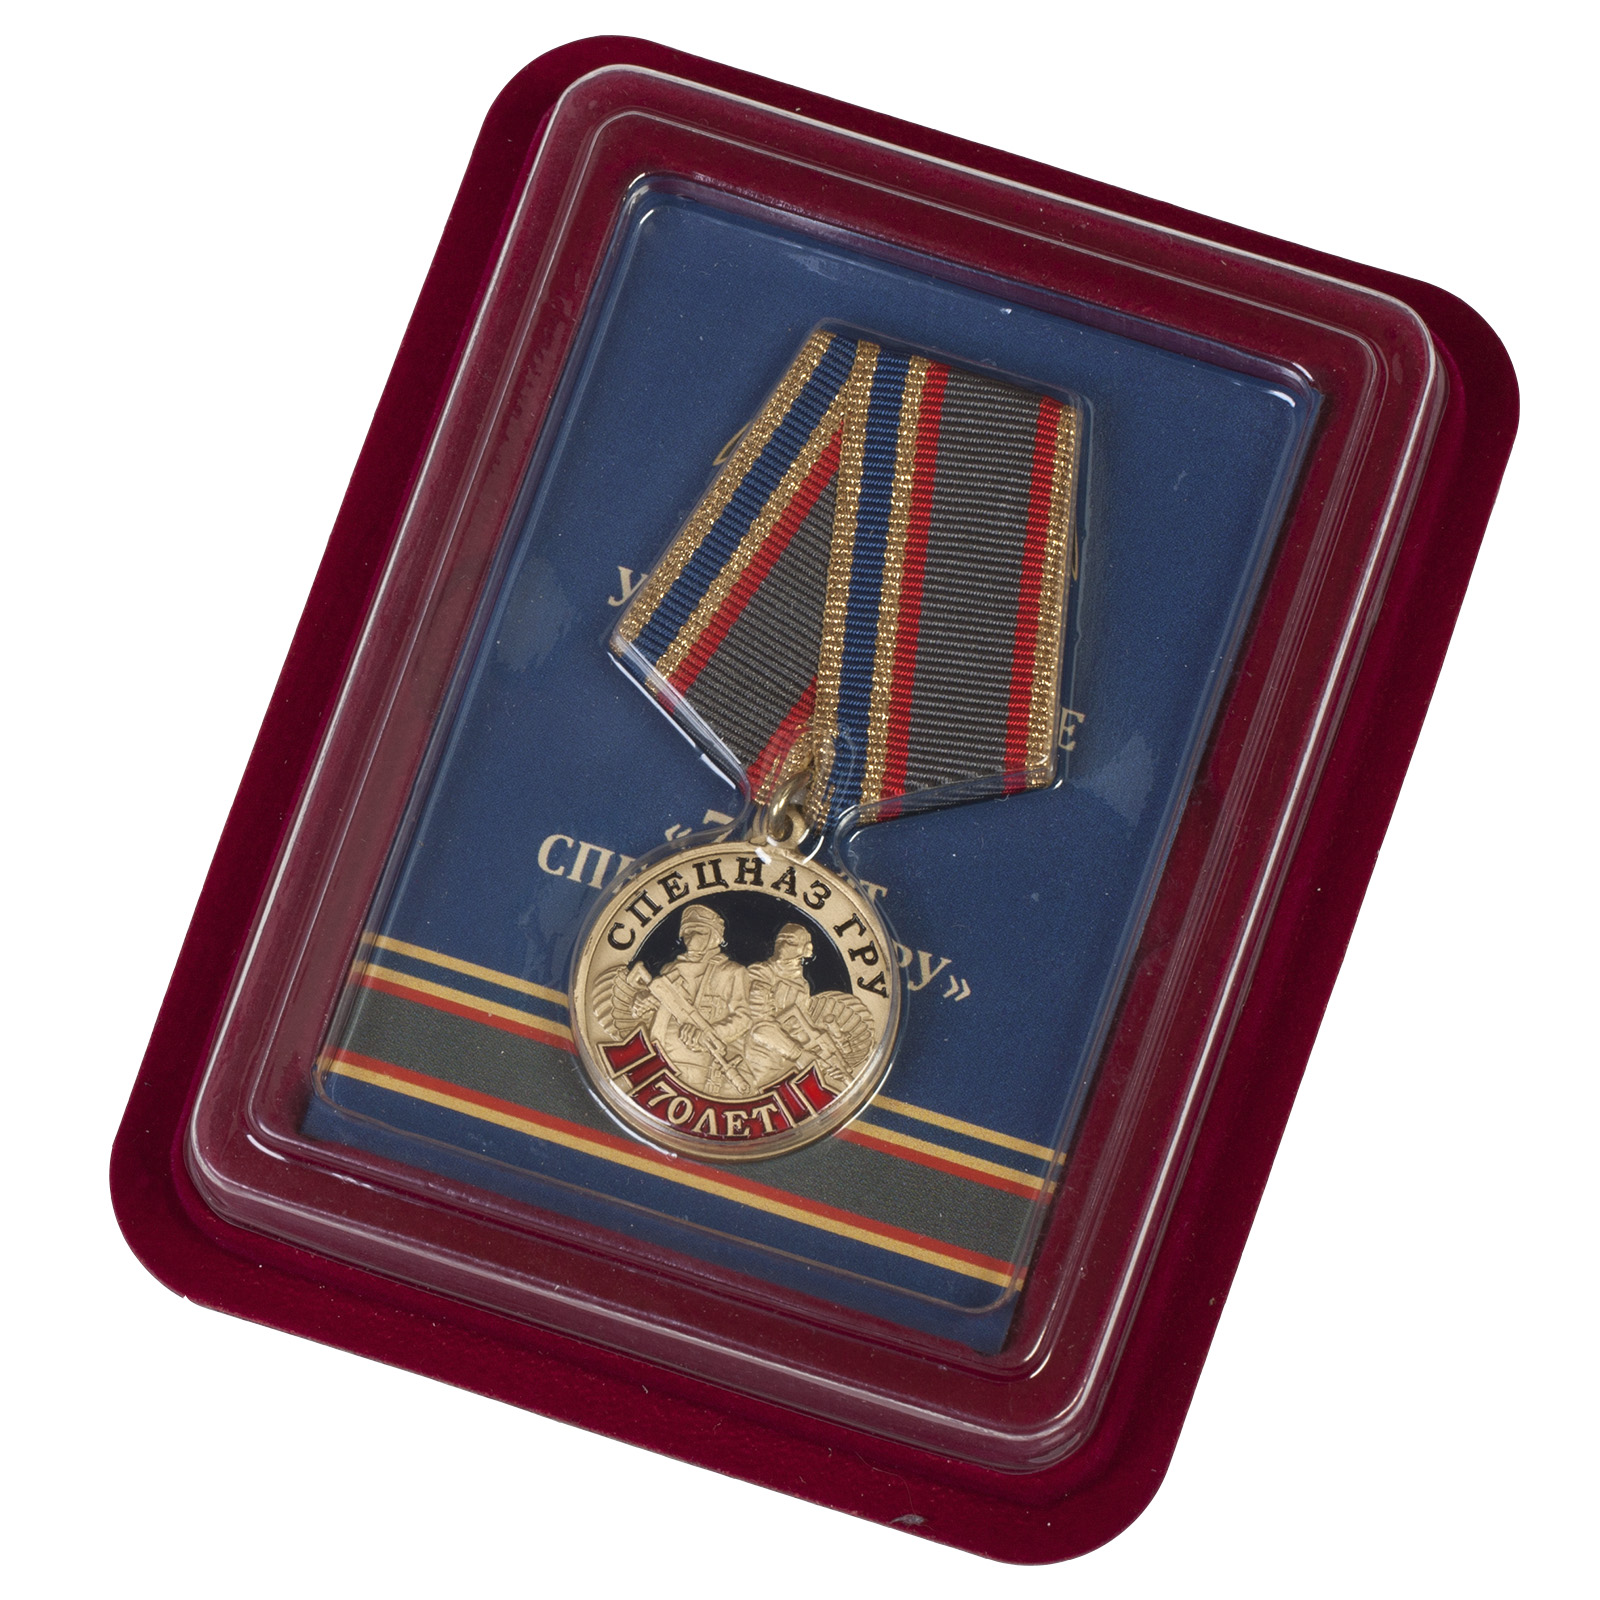 Купить медаль "70 лет Спецназу ГРУ" в бархатистом футляре